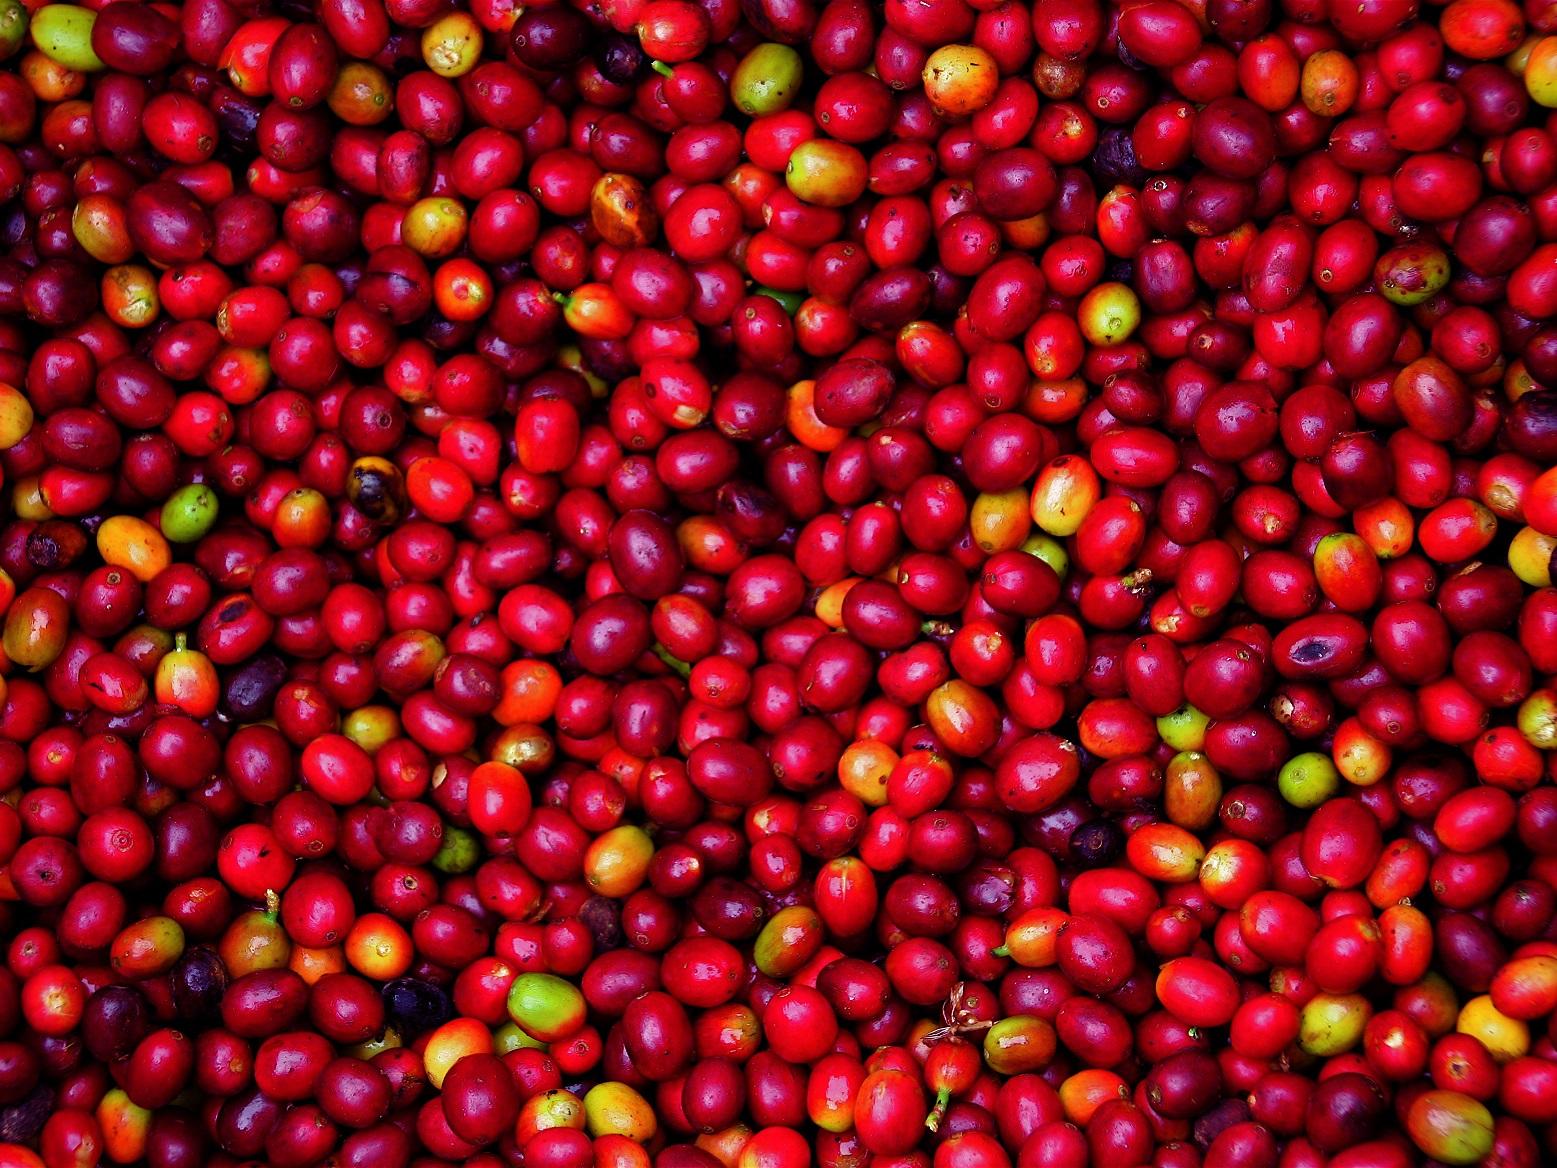 coffee cherries © David Dudenhoefer, Rainforest Alliance